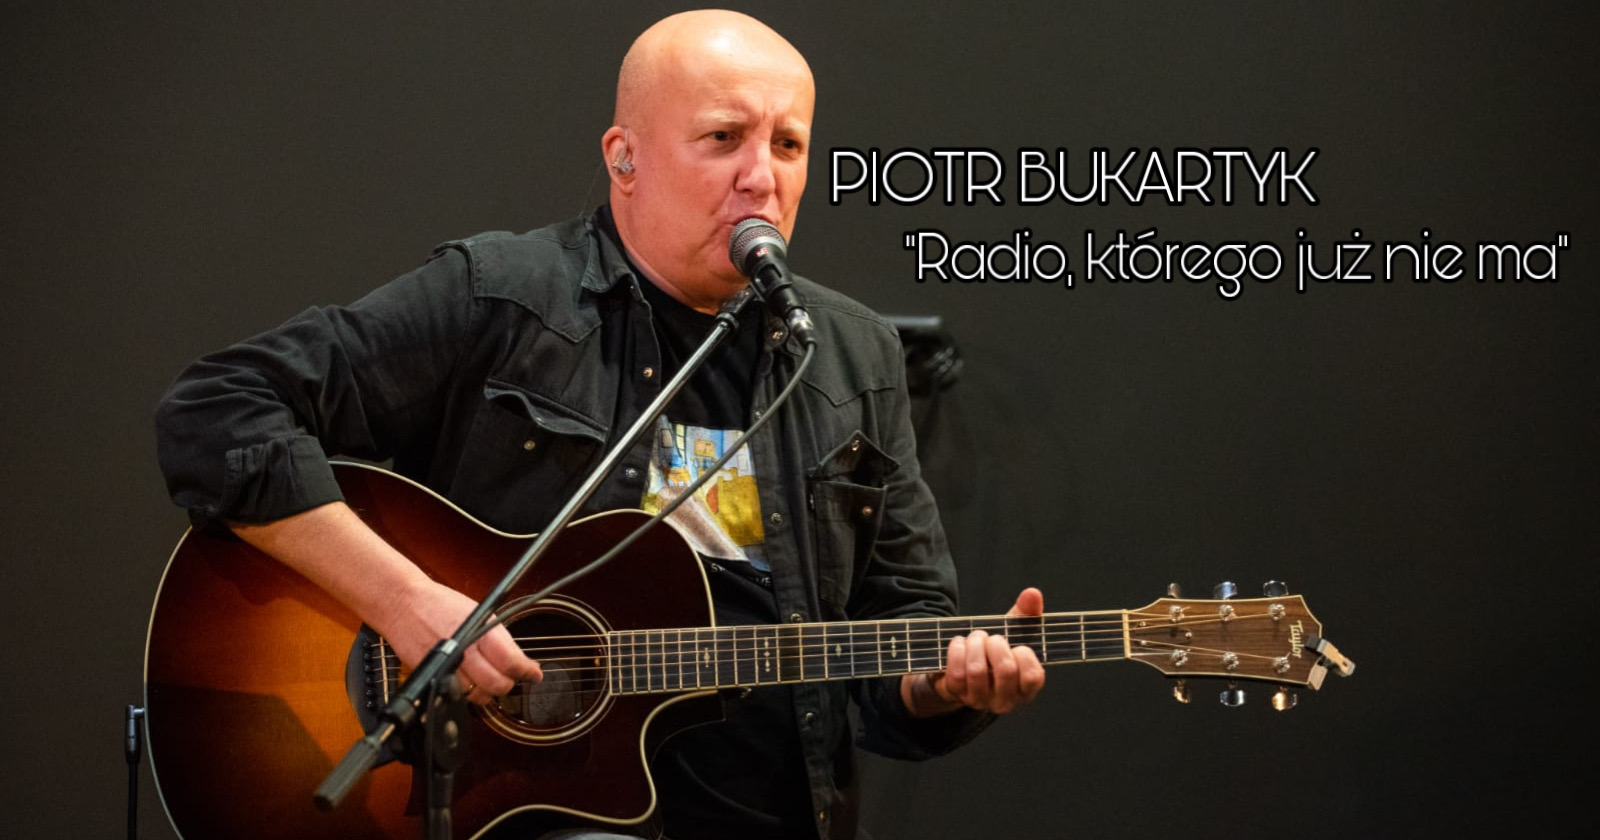 PIOTR BUKARTYK "Radio którego już nie ma" w Bydgoszczy!